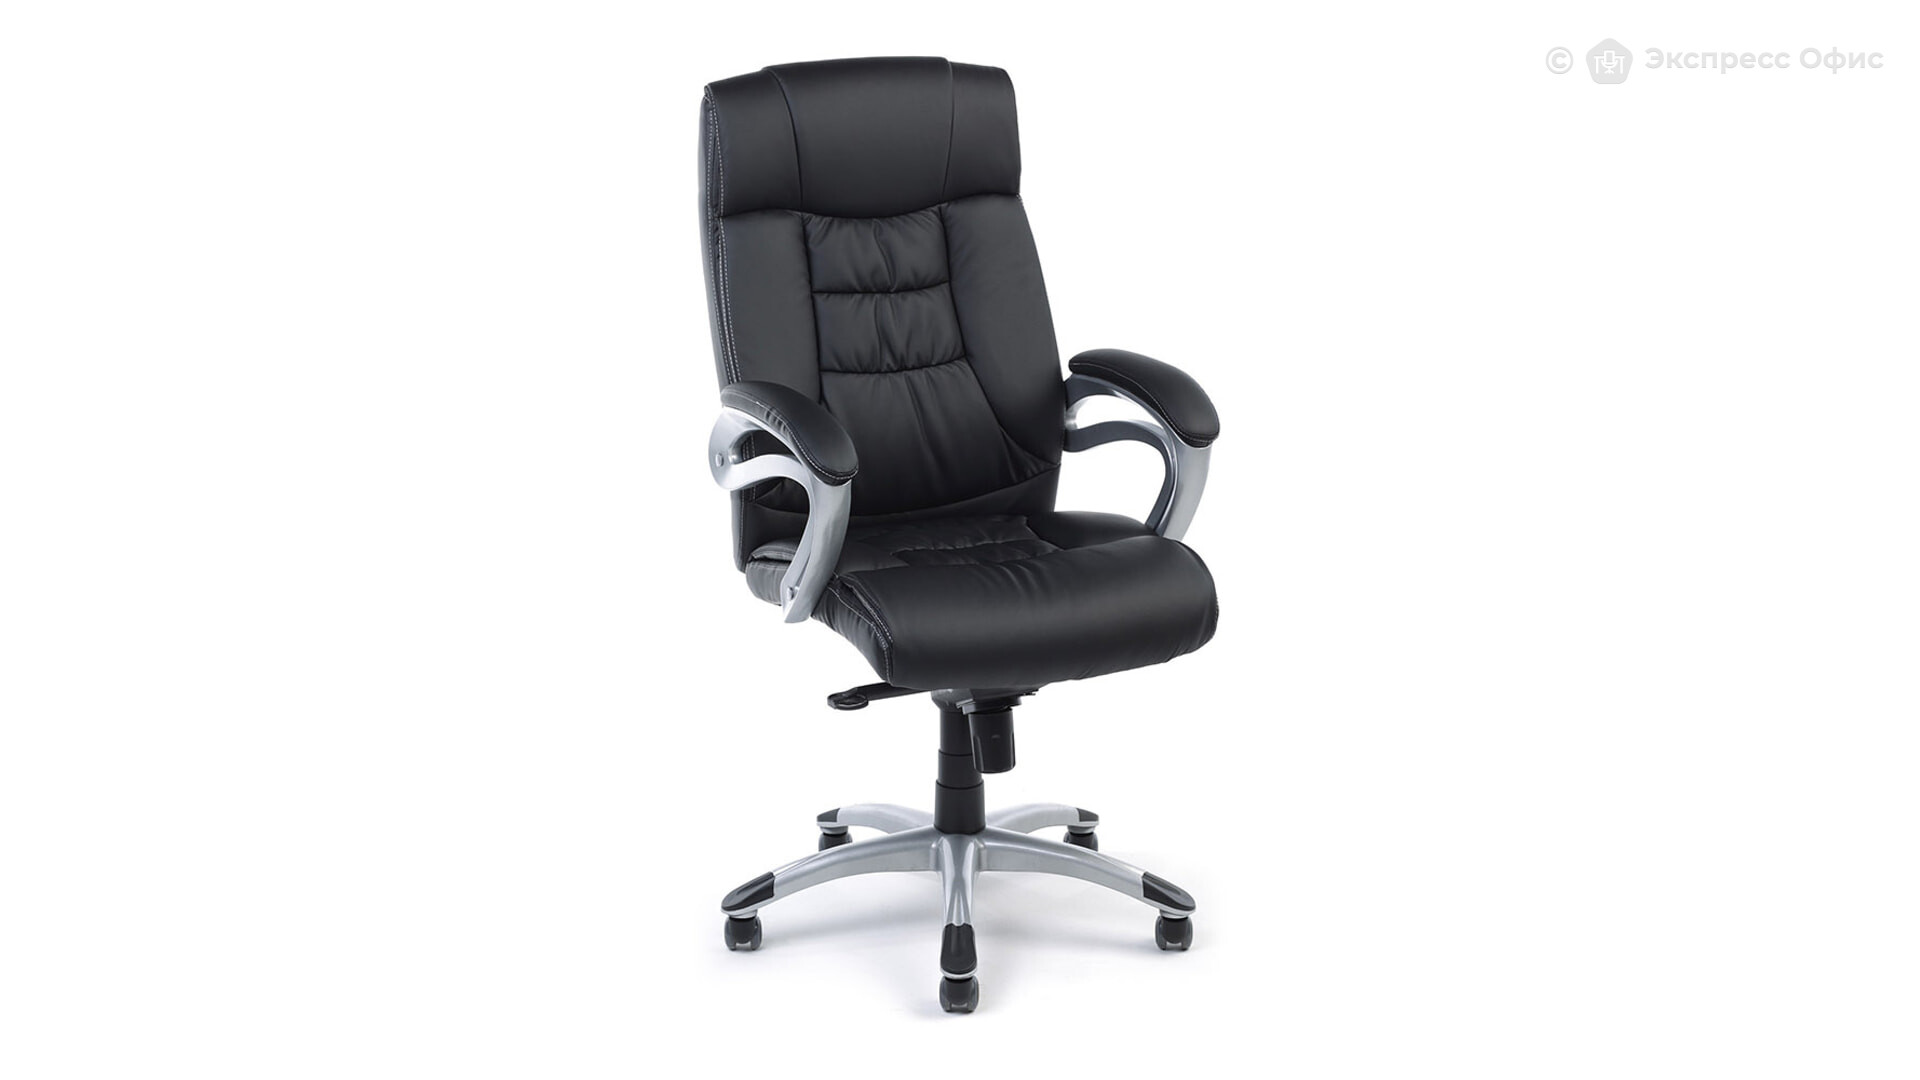 Офисное кресло руководителя george xxl 250 кг